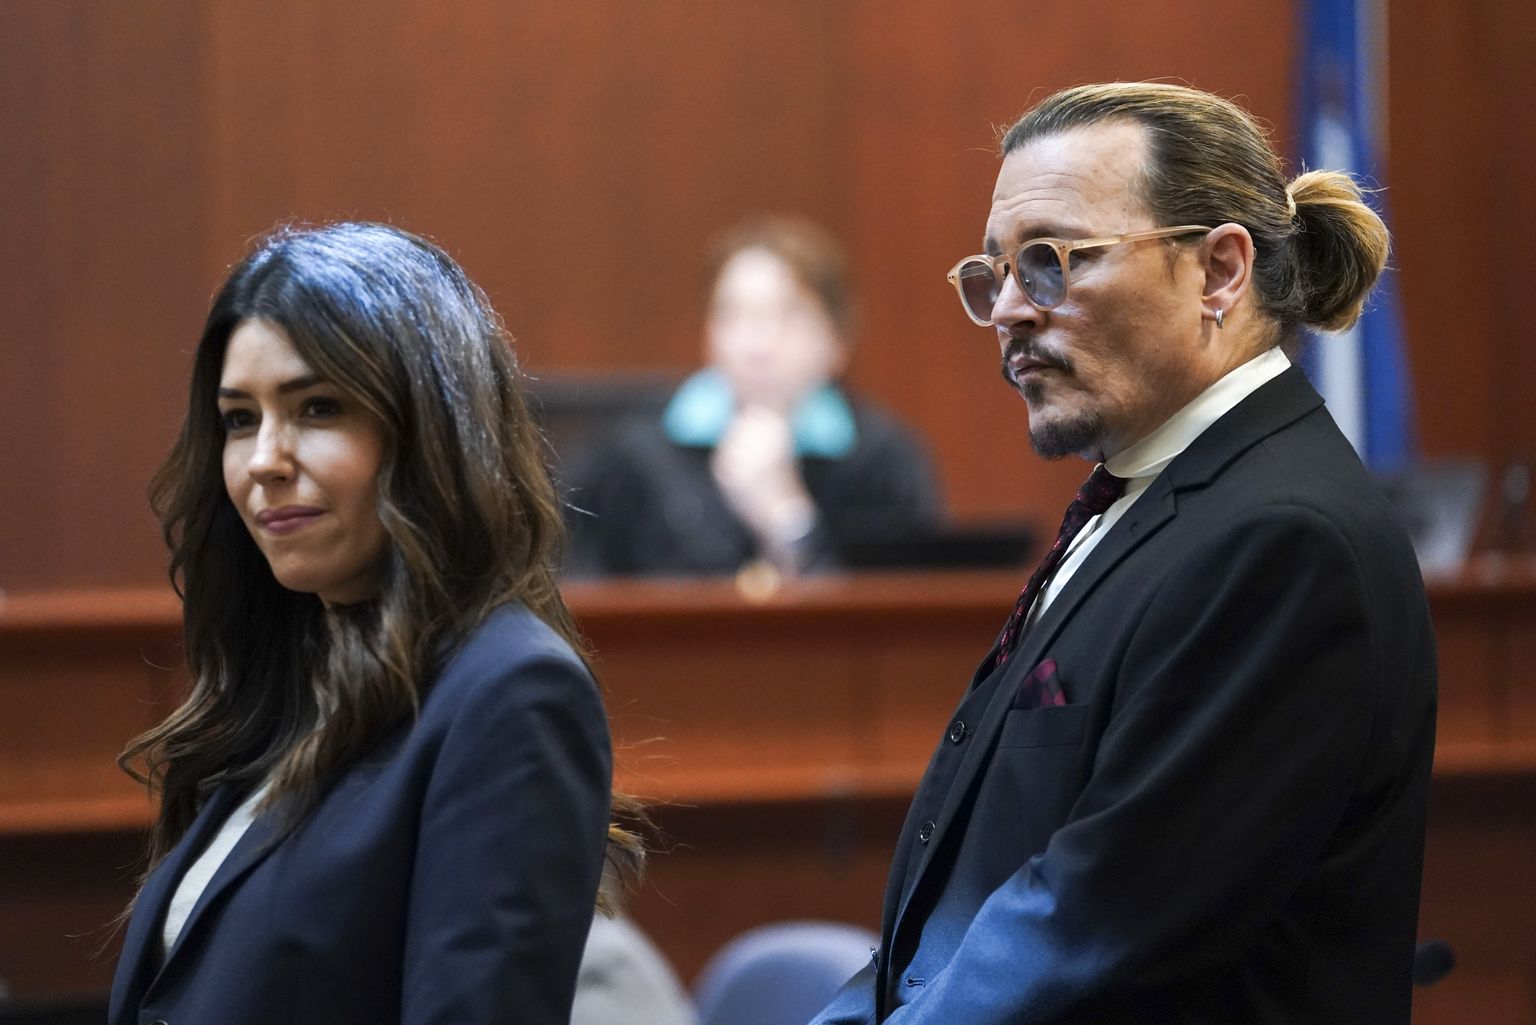 Näitleja Johnny Depp seismas enda advokaadi Camille Vasquezi kõrval Fairfaxi kohtumajas 18. mail 2022.
Johnny Depp kaebas laimu eest kohtusse enda endise abikaasa Amber Heardi.